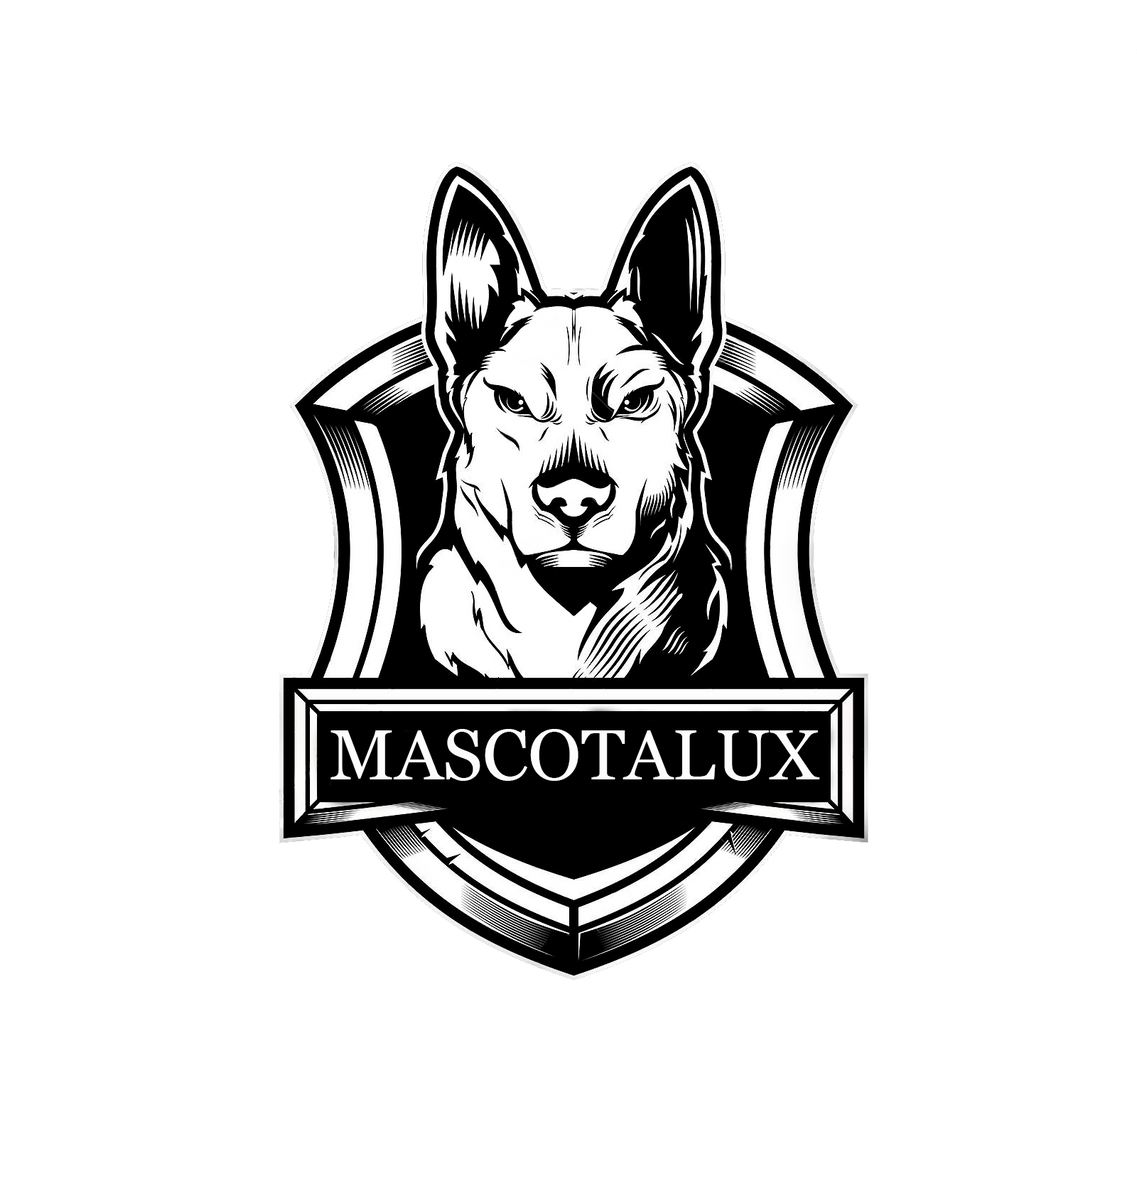 Mascotalux